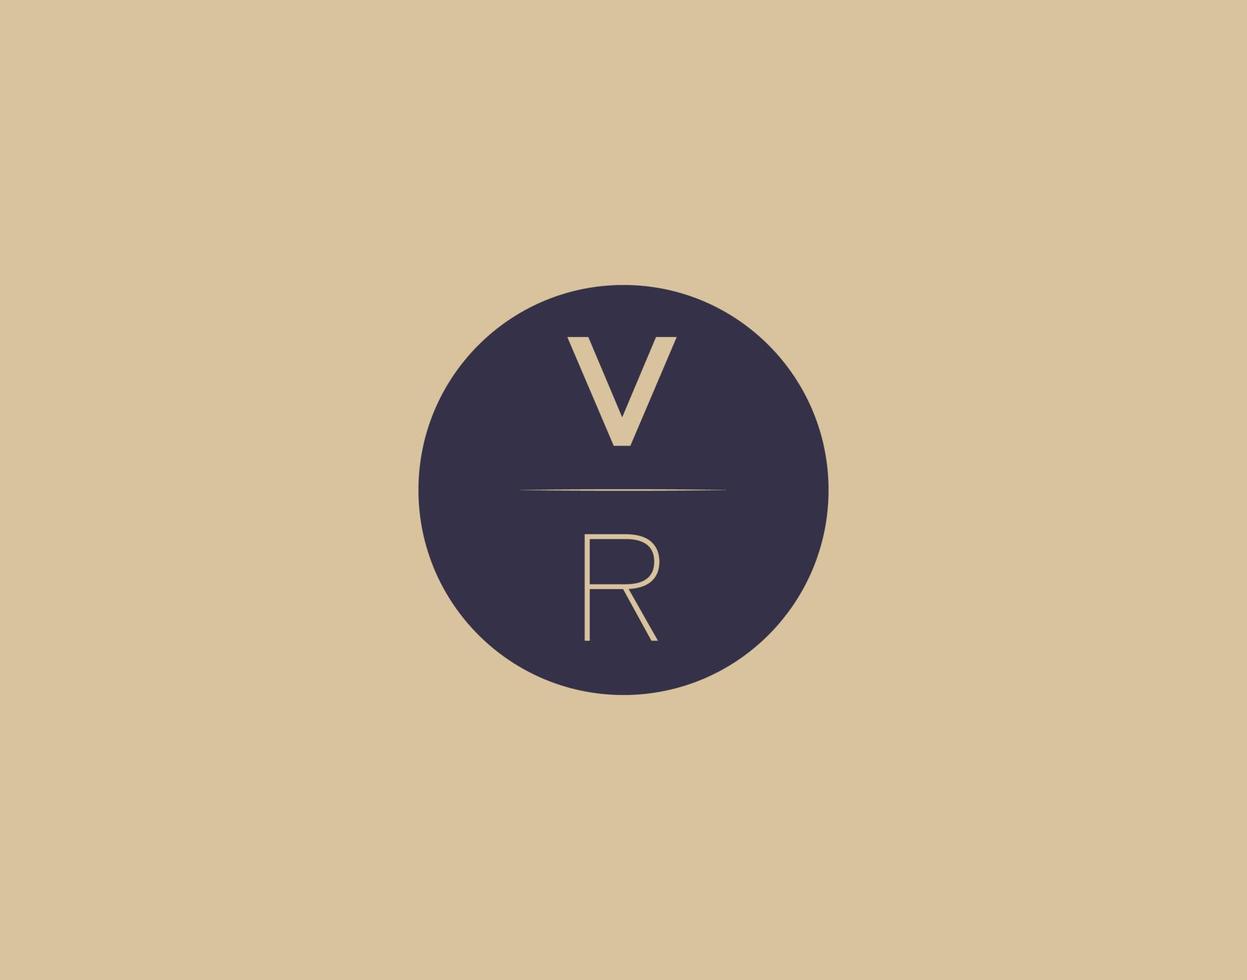 VR letter modern elegant logo design vector images